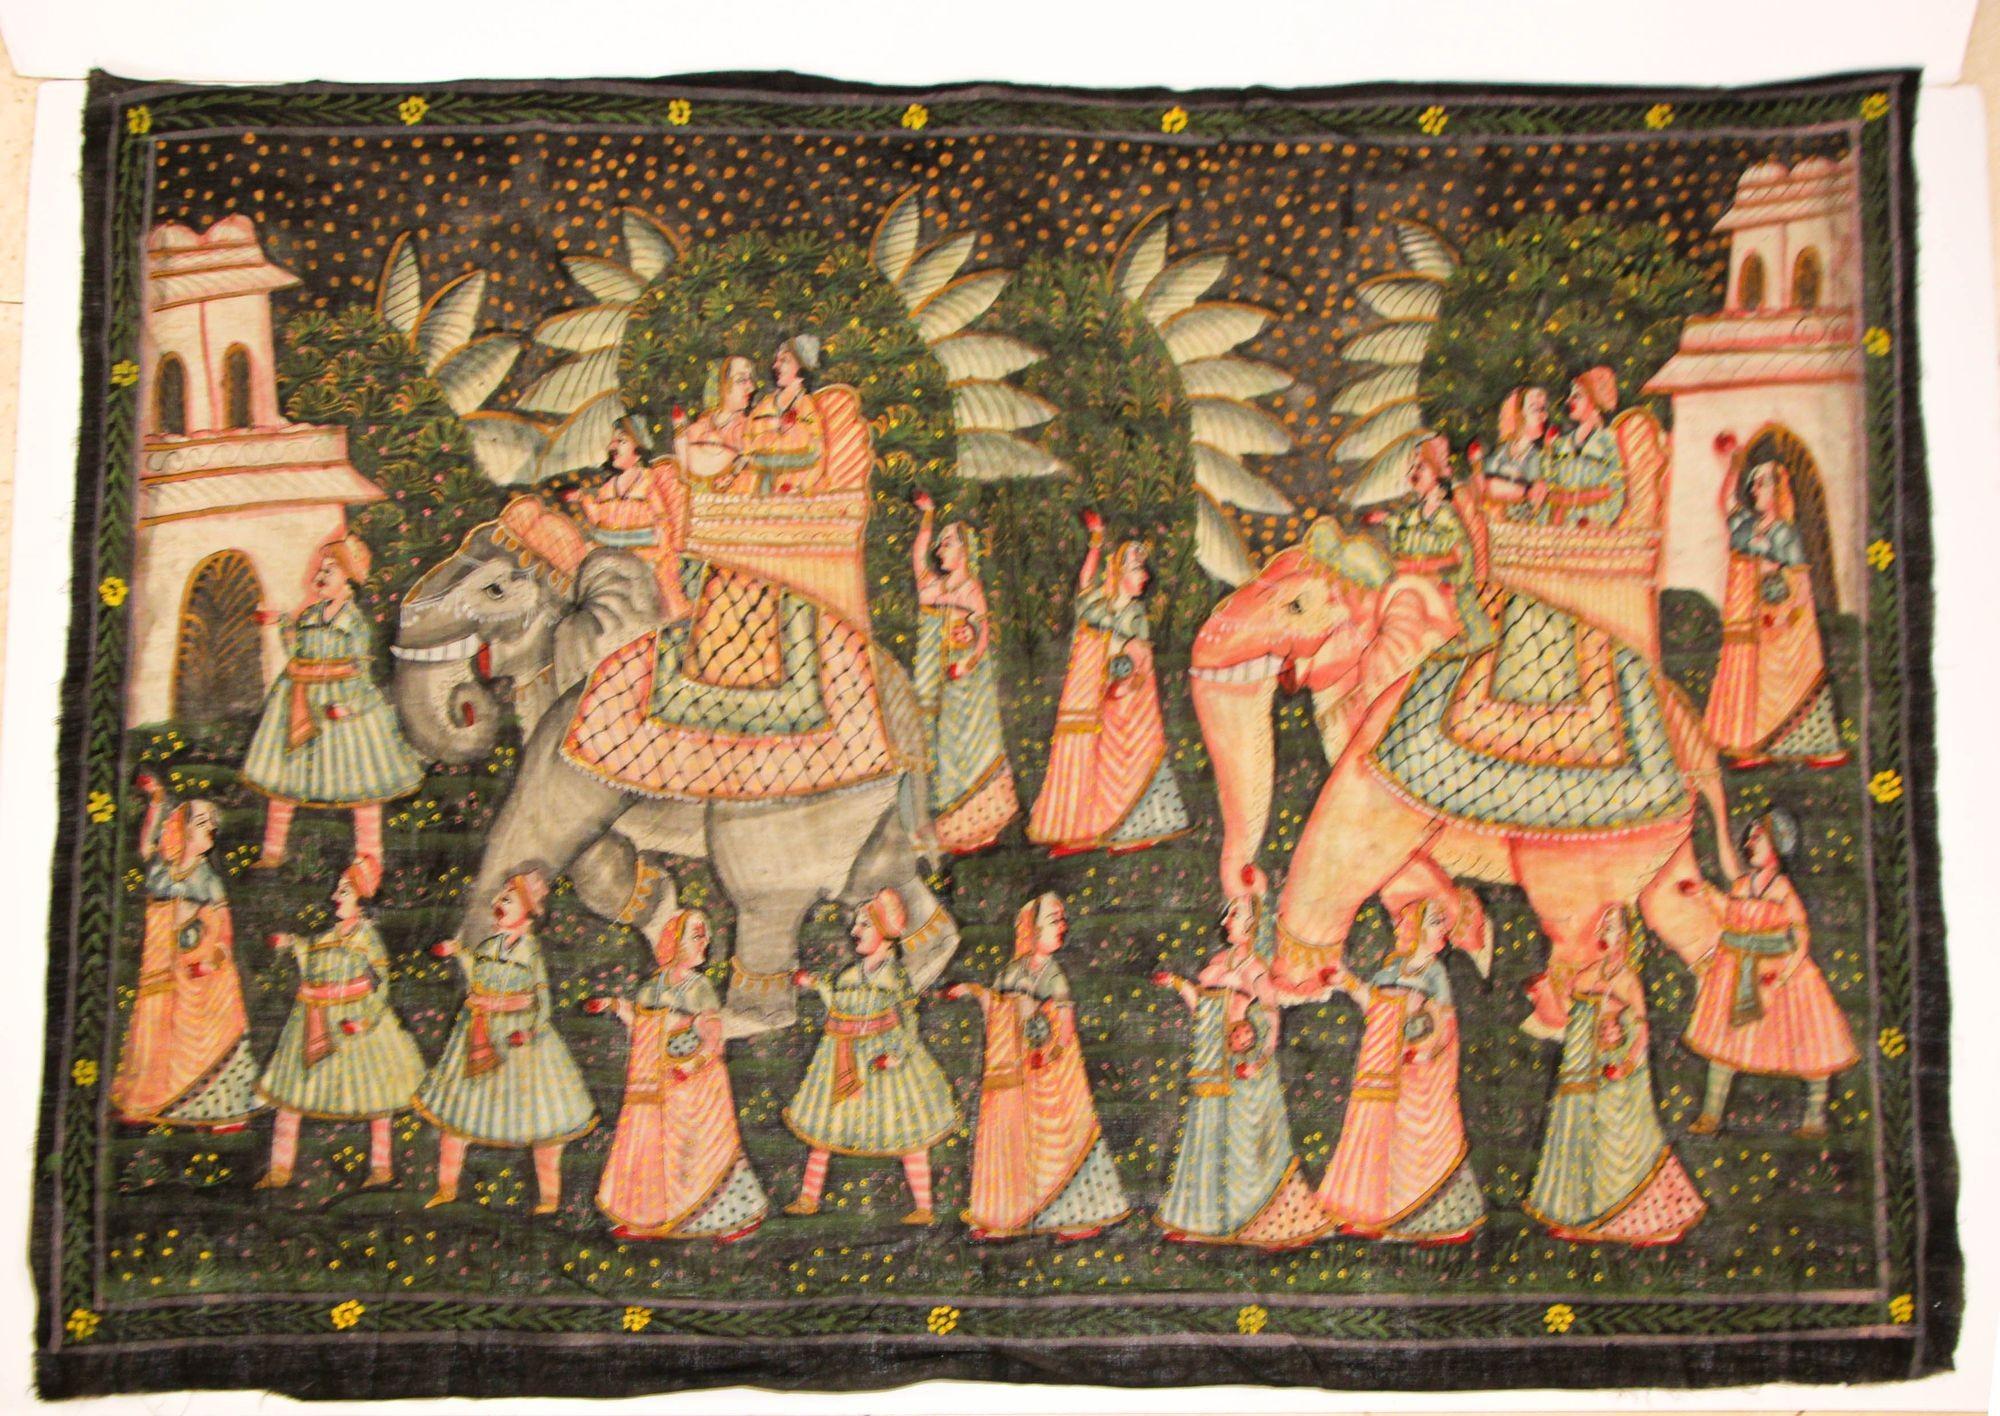 Große Vintage Mughal Seide Malerei eines Maharaja Royal Procession, zwei königliche Paare auf Elefanten, wahrscheinlich eine Hochzeit Prozession mit Diener zu Fuß um sie herum.
Mughal-Szene, handgemalt auf Seide, sehr fein detailliert und schöne